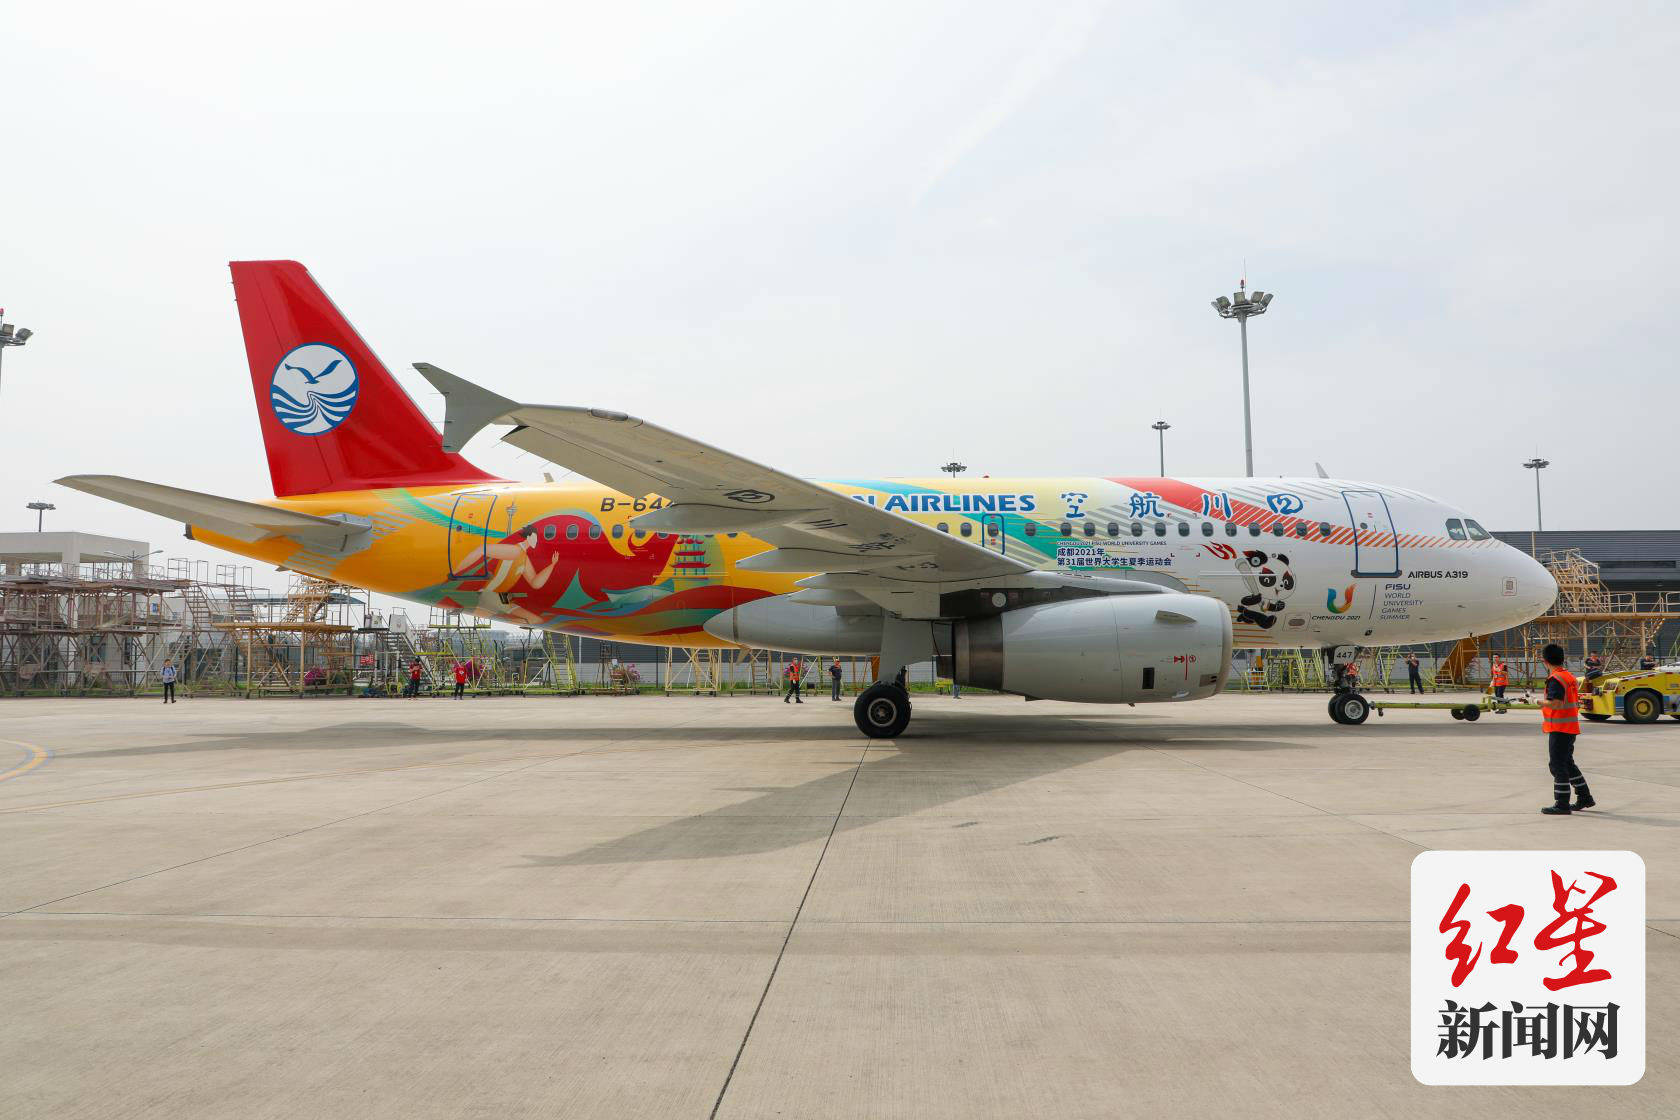 彩绘|川航“大运号”主题彩绘飞机正式亮相 5月8日投入航班运营